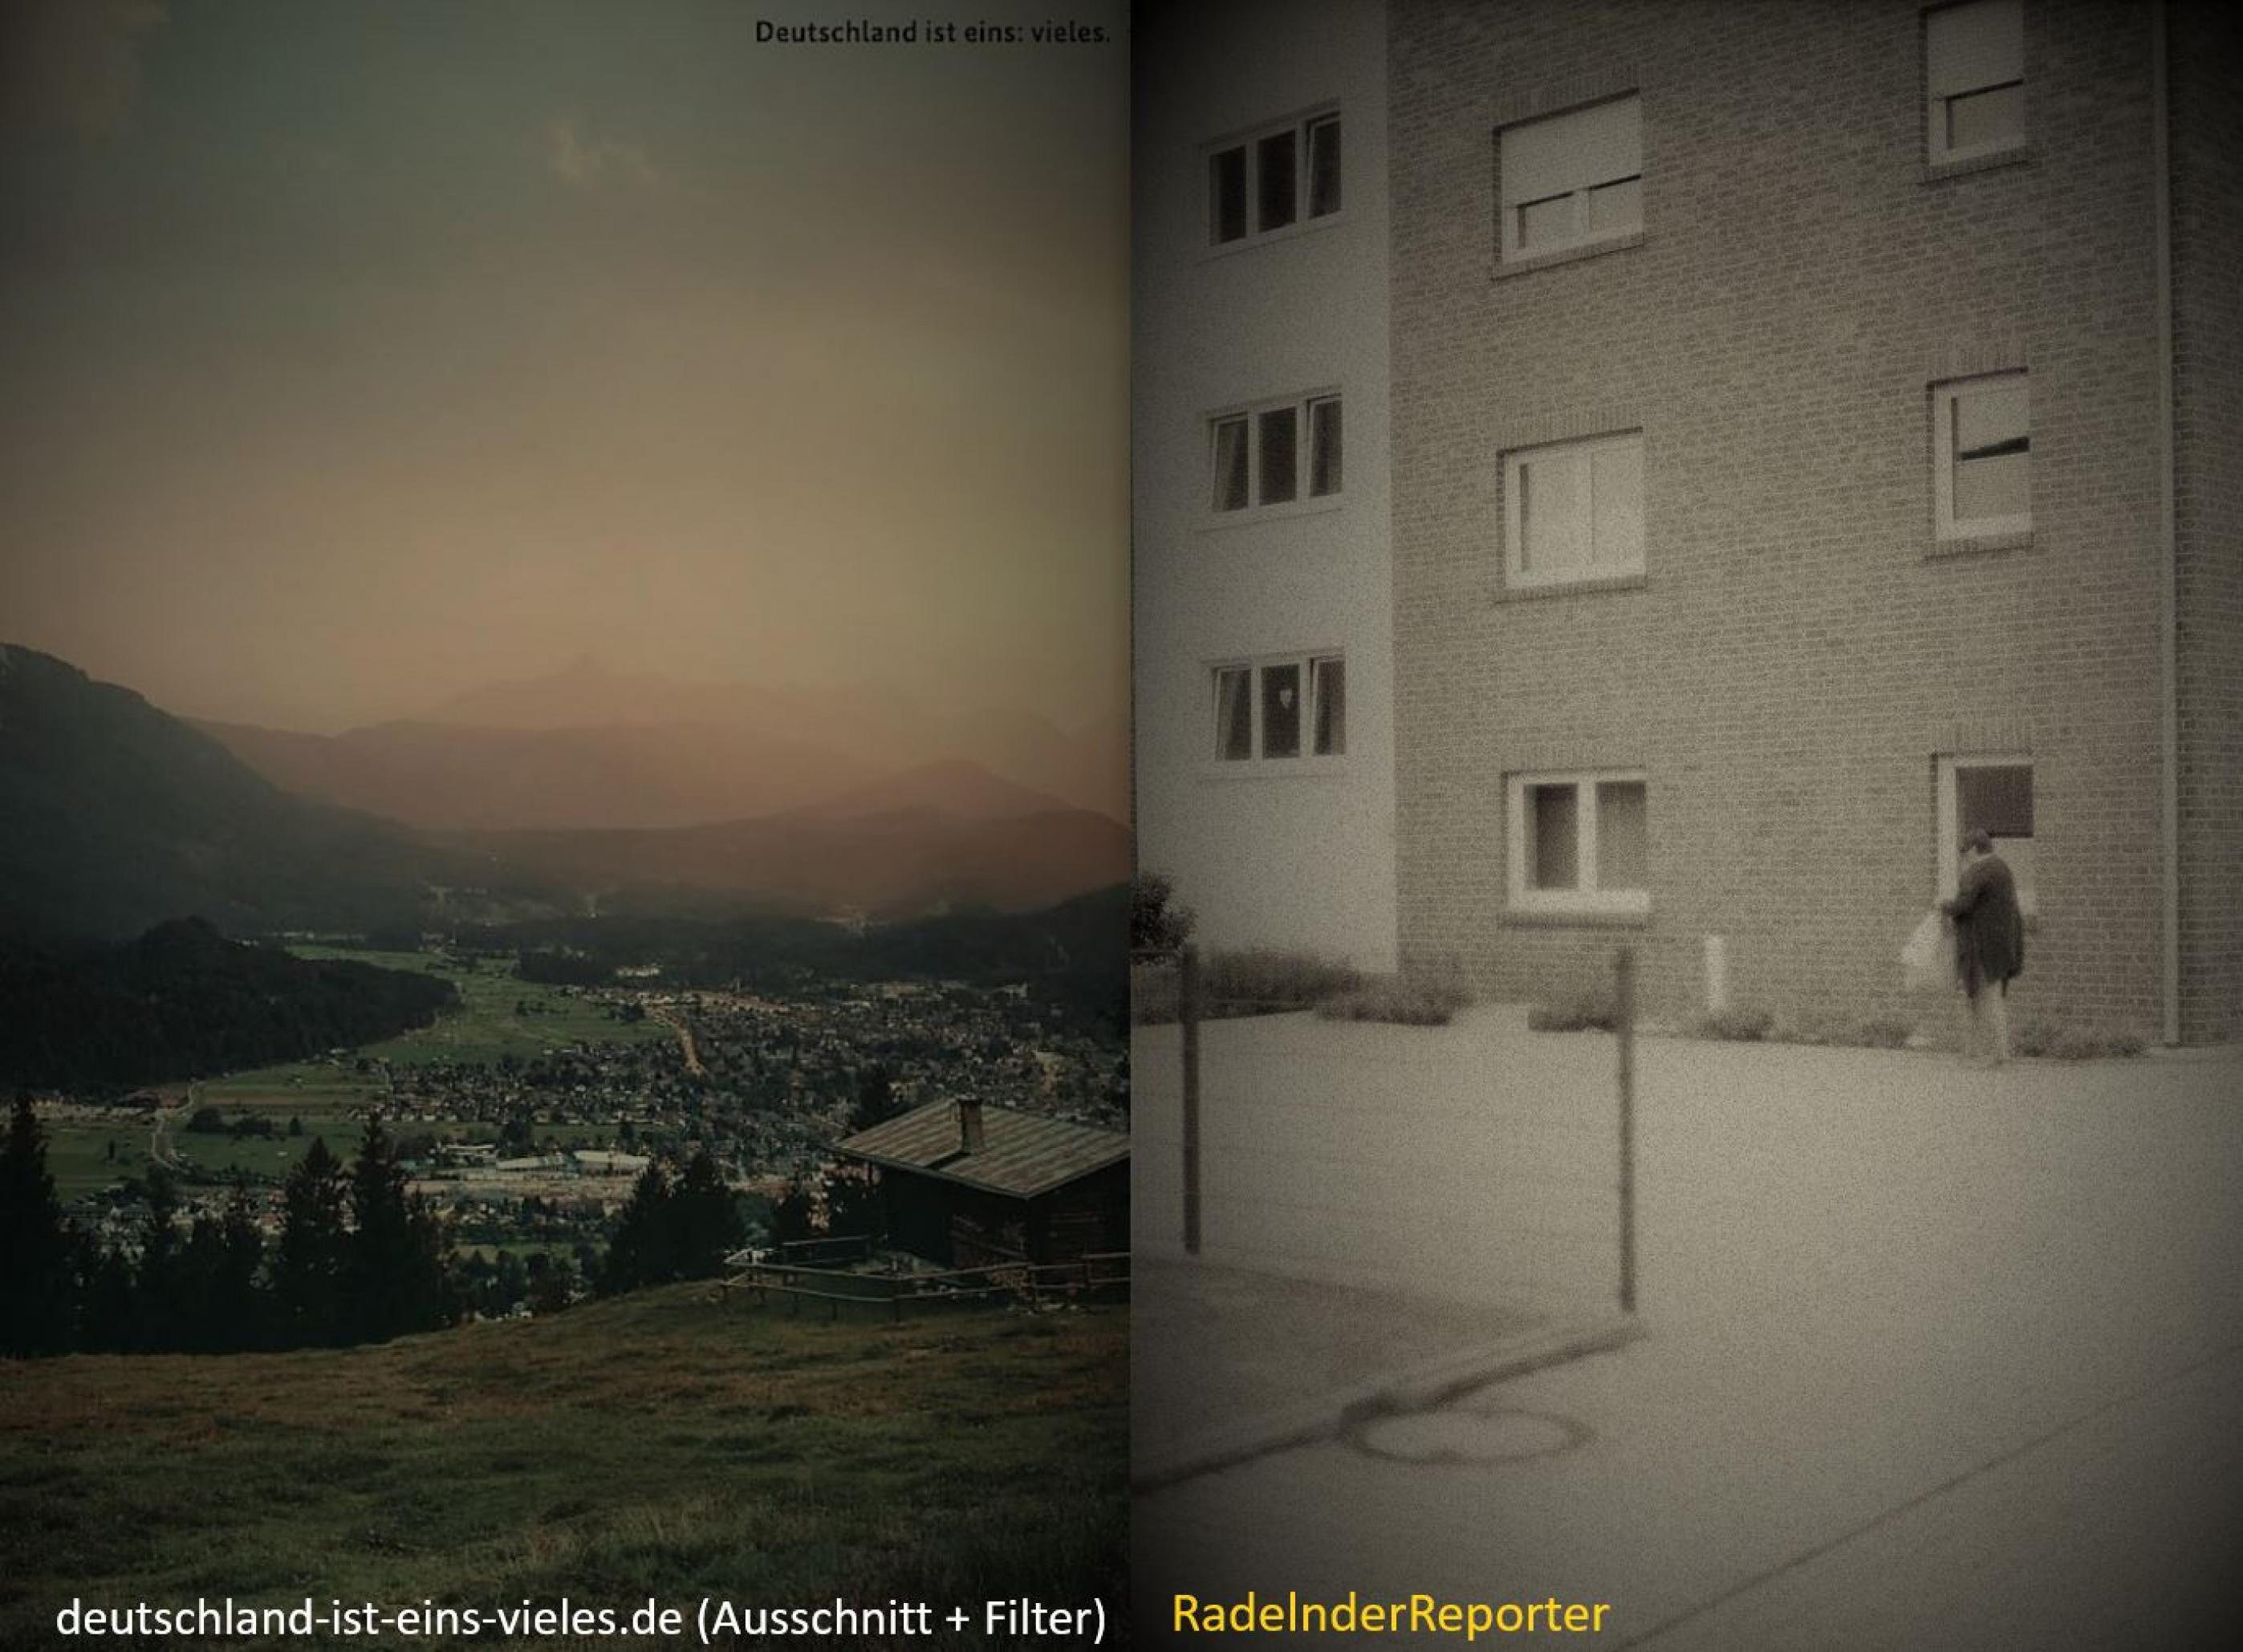 zweigeteiltes Bild: links das Bild der Regierungskampagne, rechts das des RadelndenReporters; beide Bilder zeigen deutsche Siedlungsgebiete.